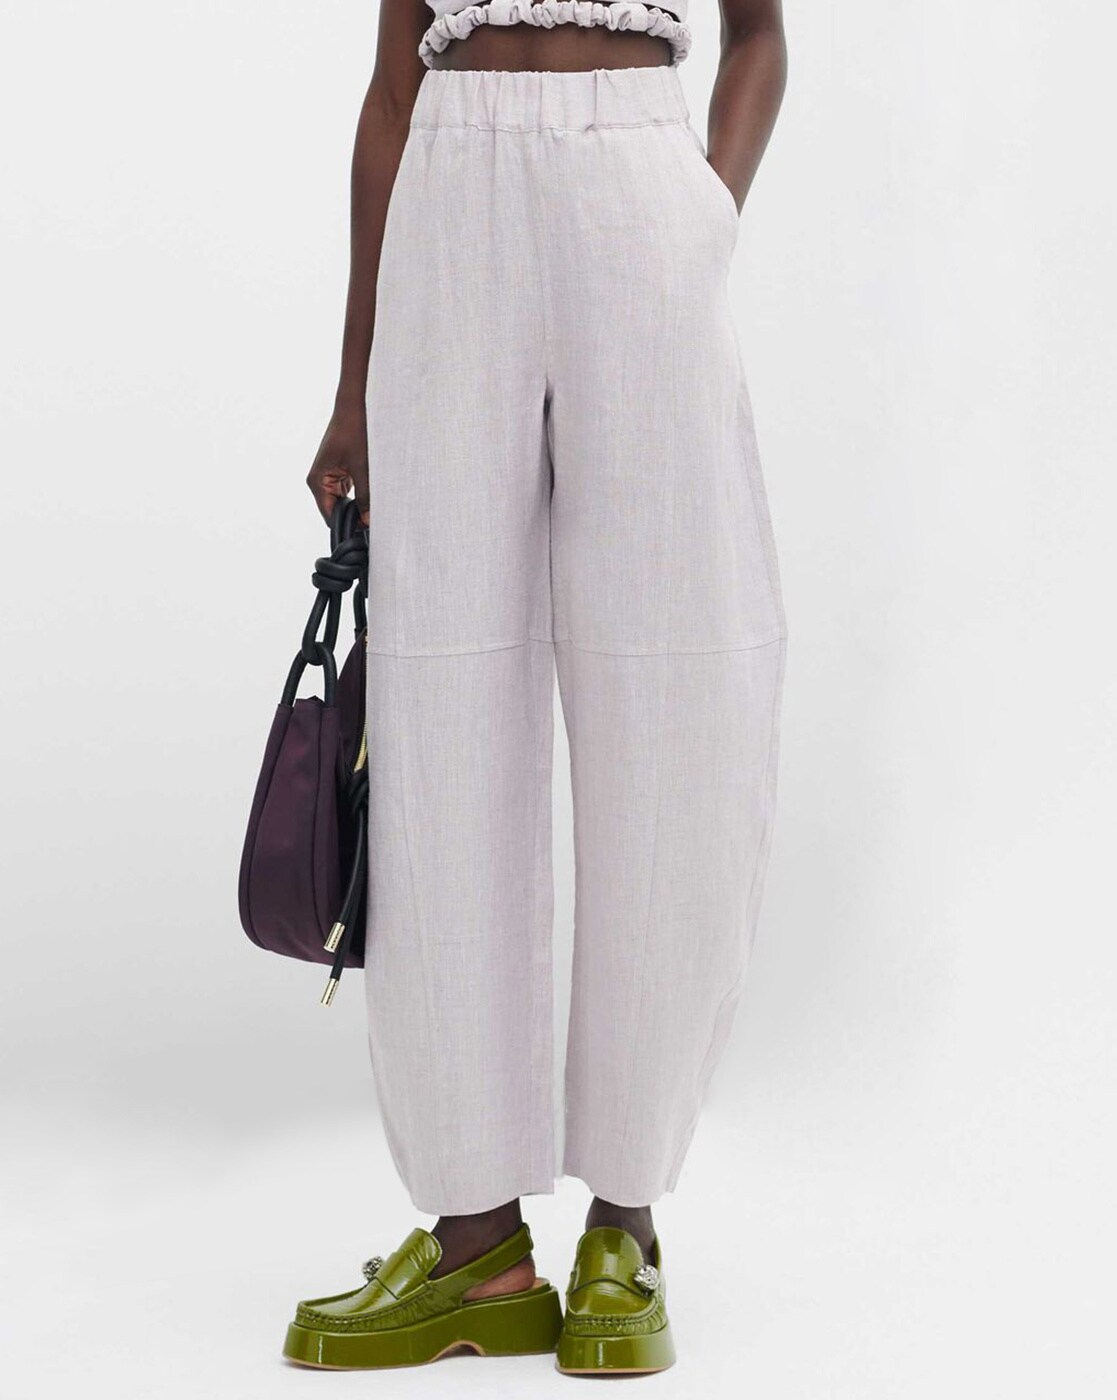 High waisted Zara trousers on a short girl 52 size 24 shortgirl    TikTok